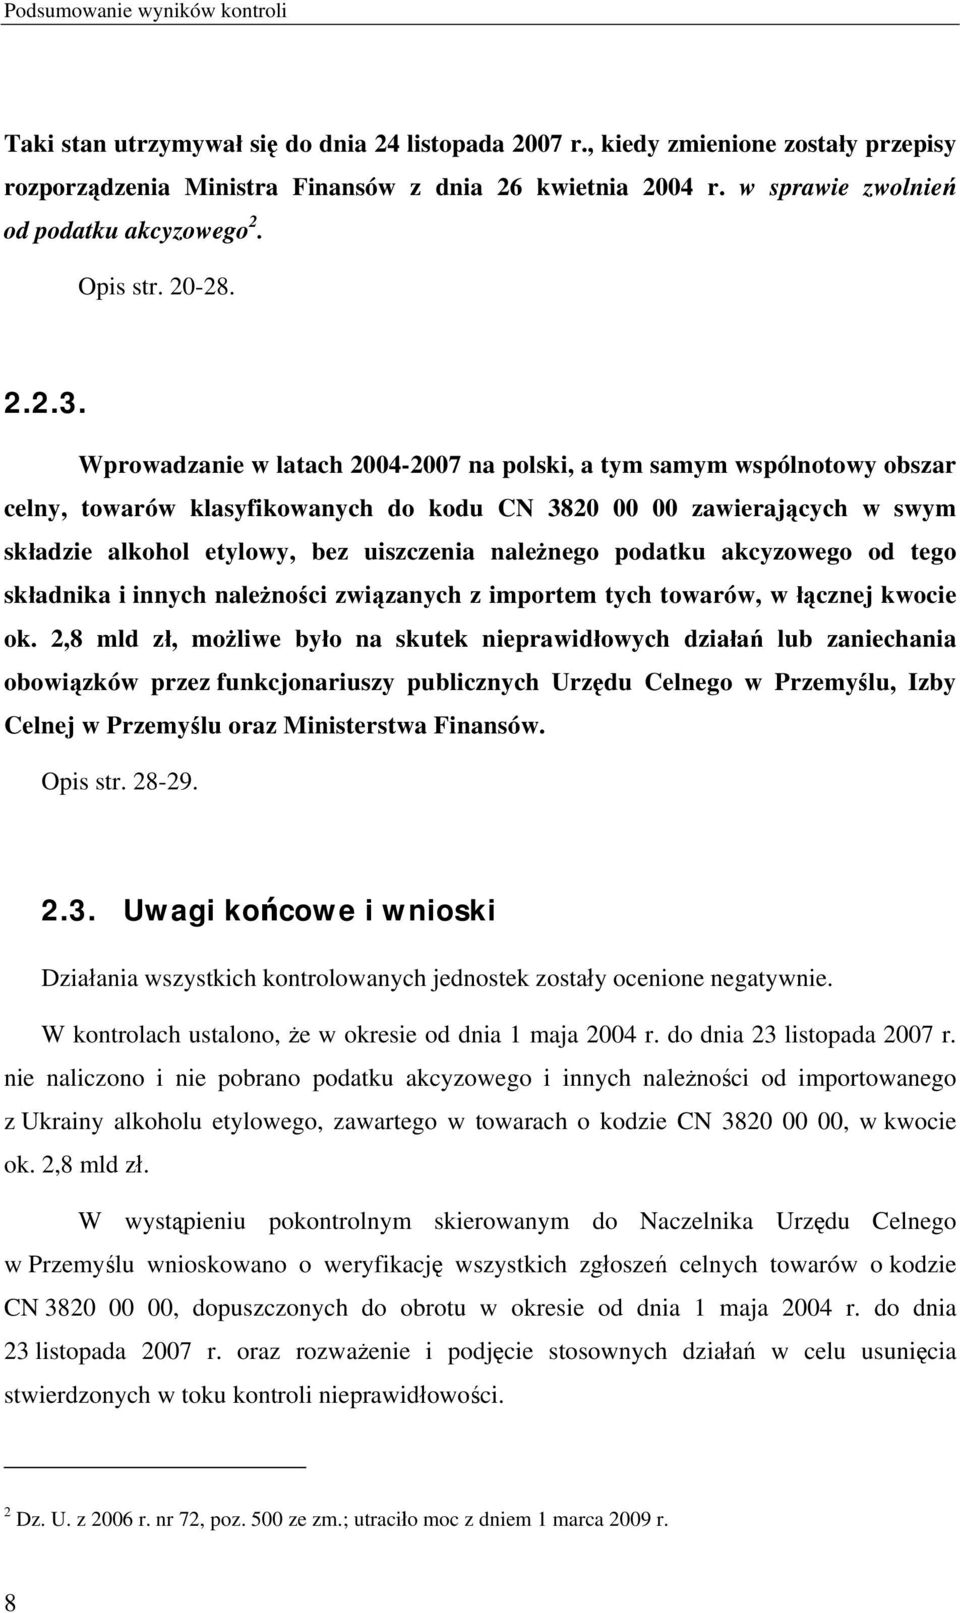 Wprowadzanie w latach 2004-2007 na polski, a tym samym wspólnotowy obszar celny, towarów klasyfikowanych do kodu CN 3820 00 00 zawierających w swym składzie alkohol etylowy, bez uiszczenia należnego